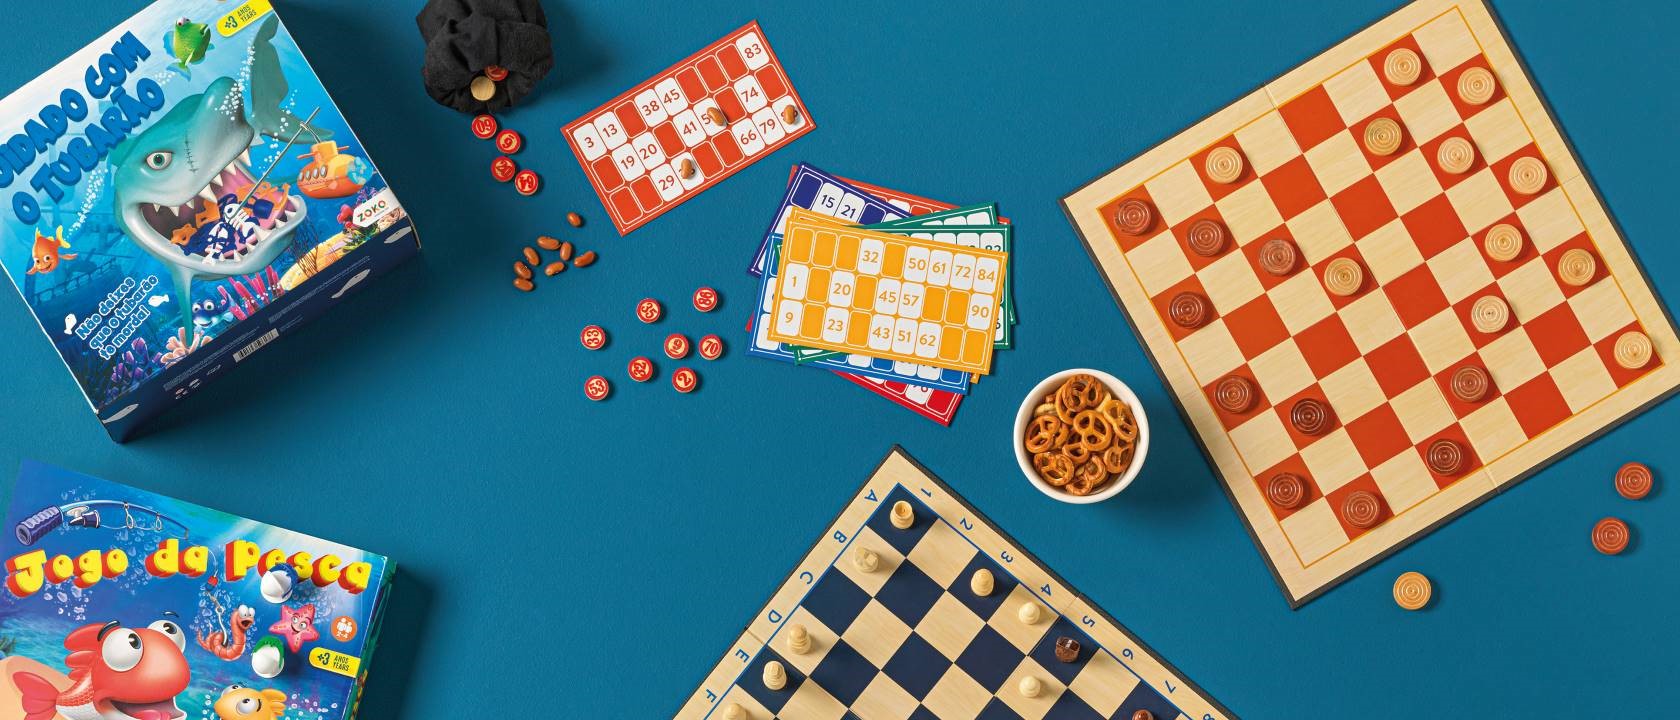 Conheça 13 bons jogos de tabuleiro para se divertir com as crianças em casa